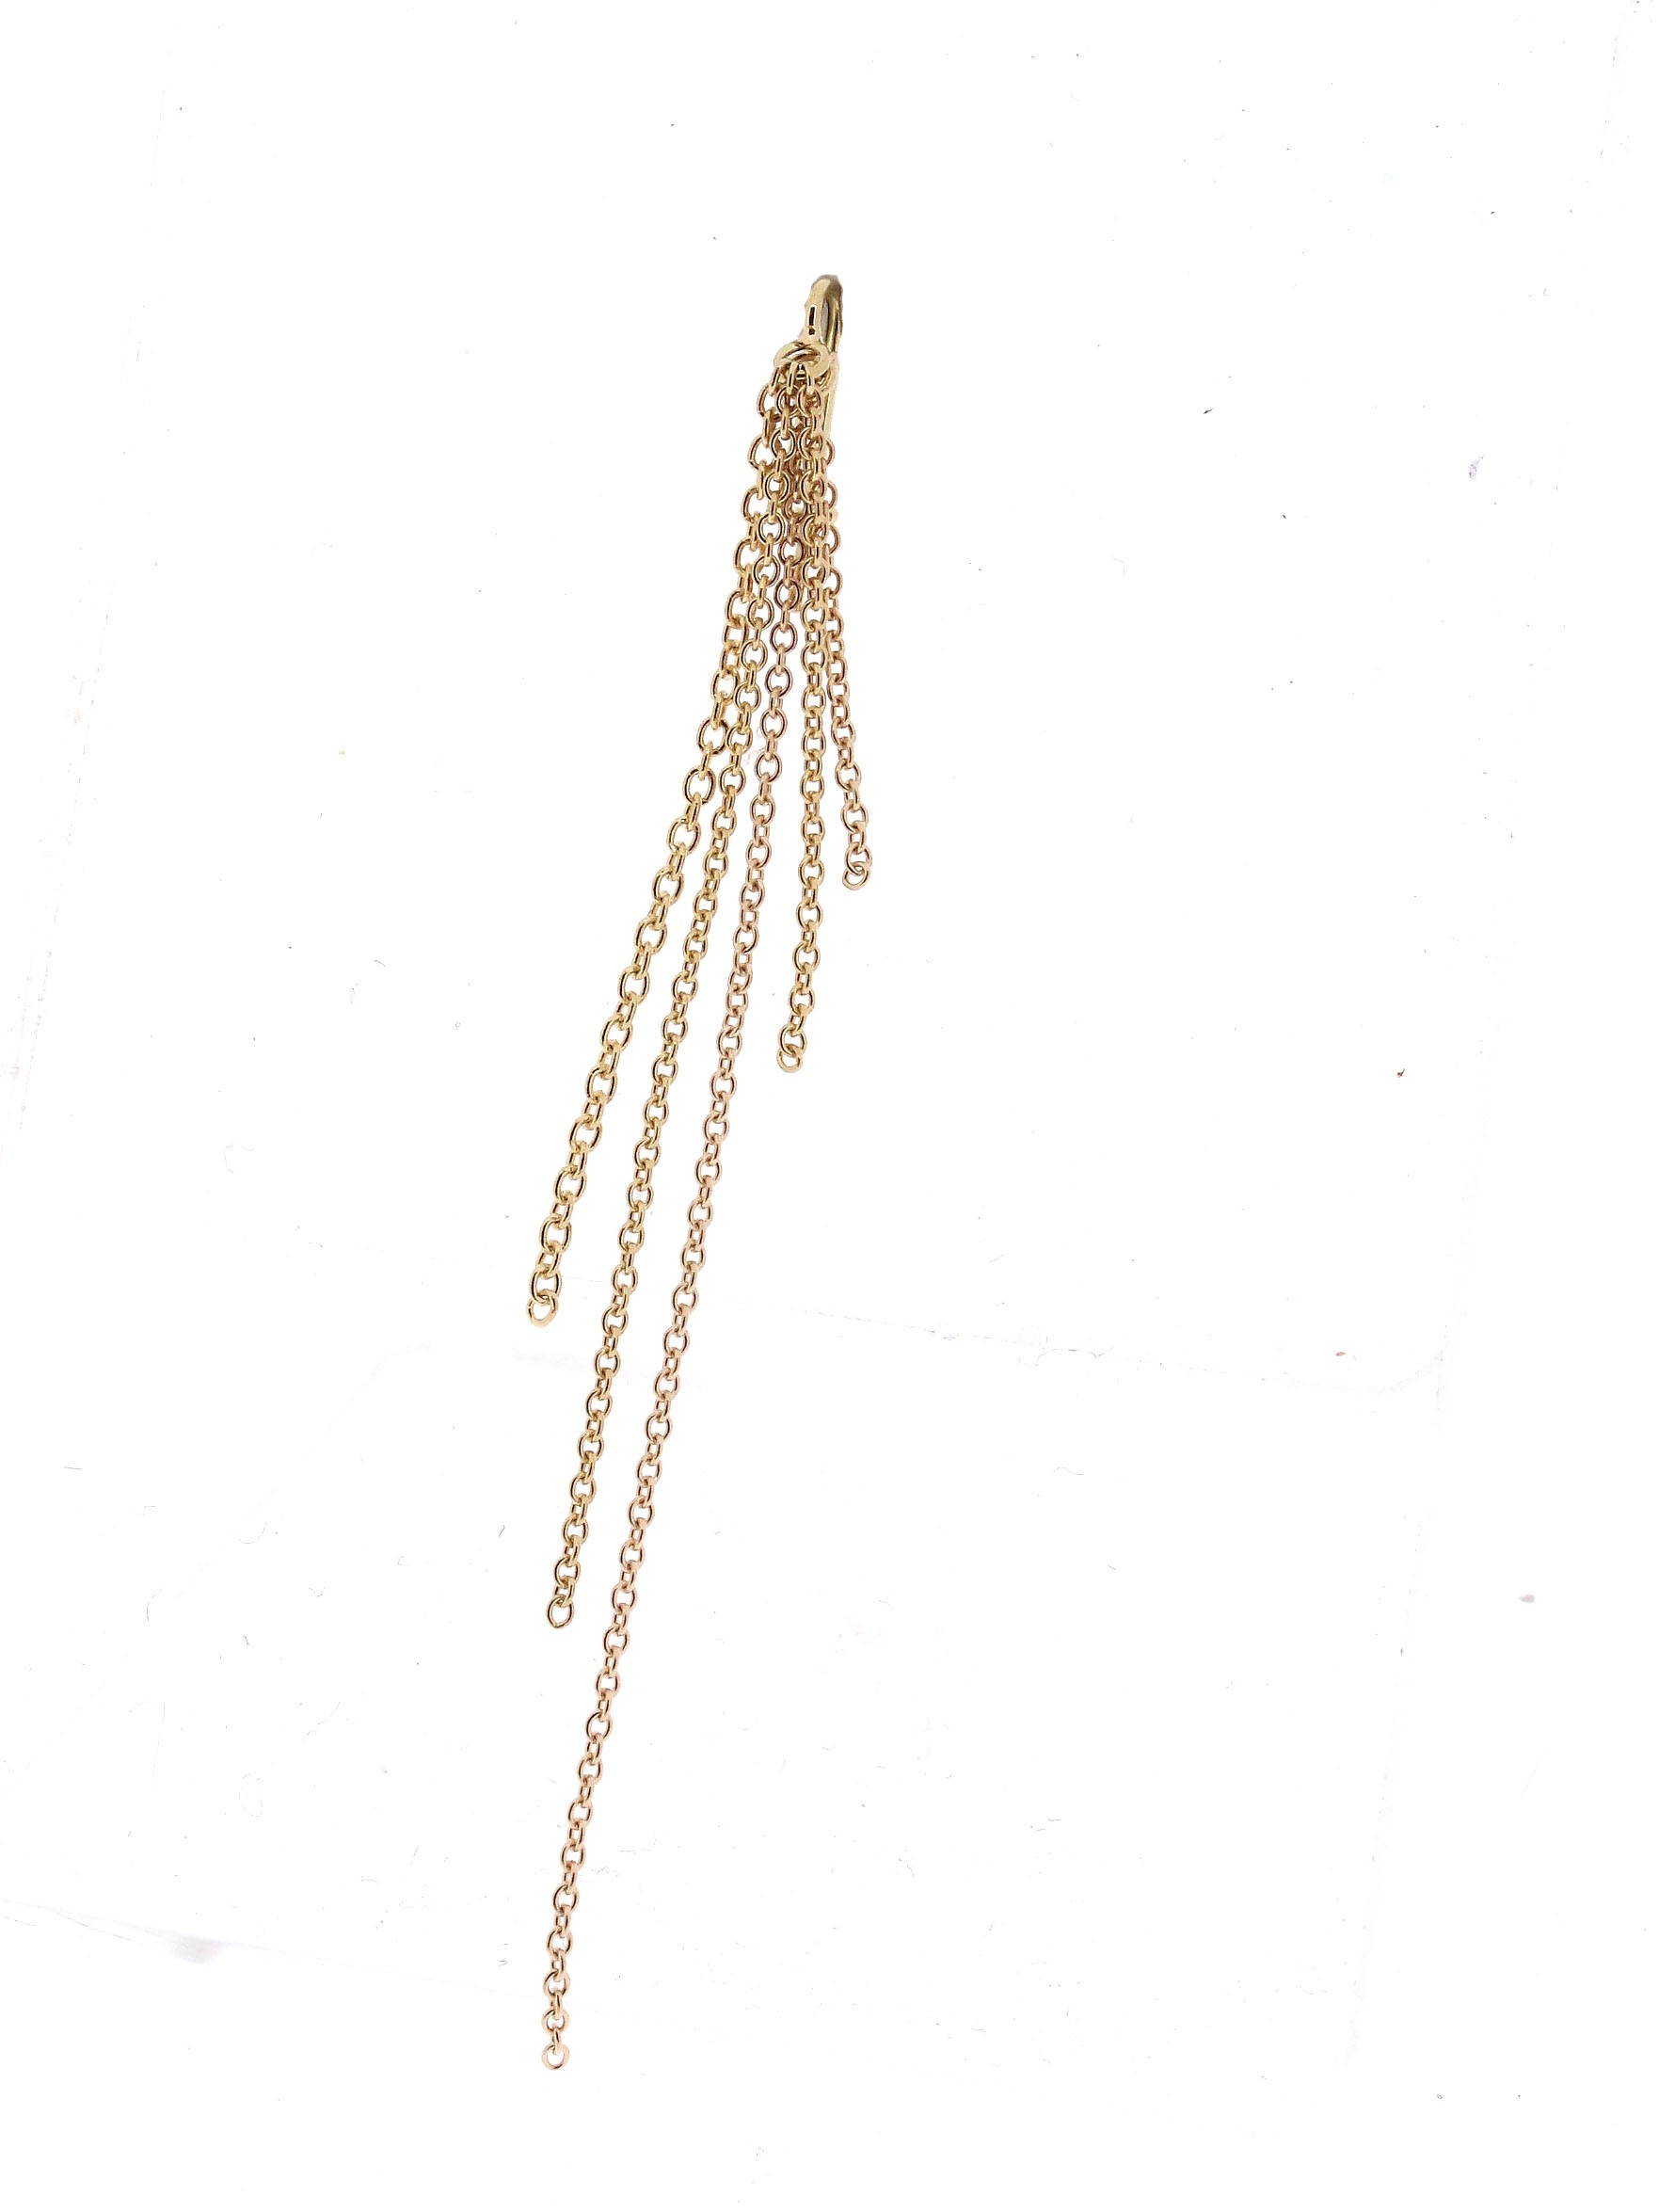 Ohrring Einhänger Kette 18kt Gold - Ole Lynggaard - A2855-401